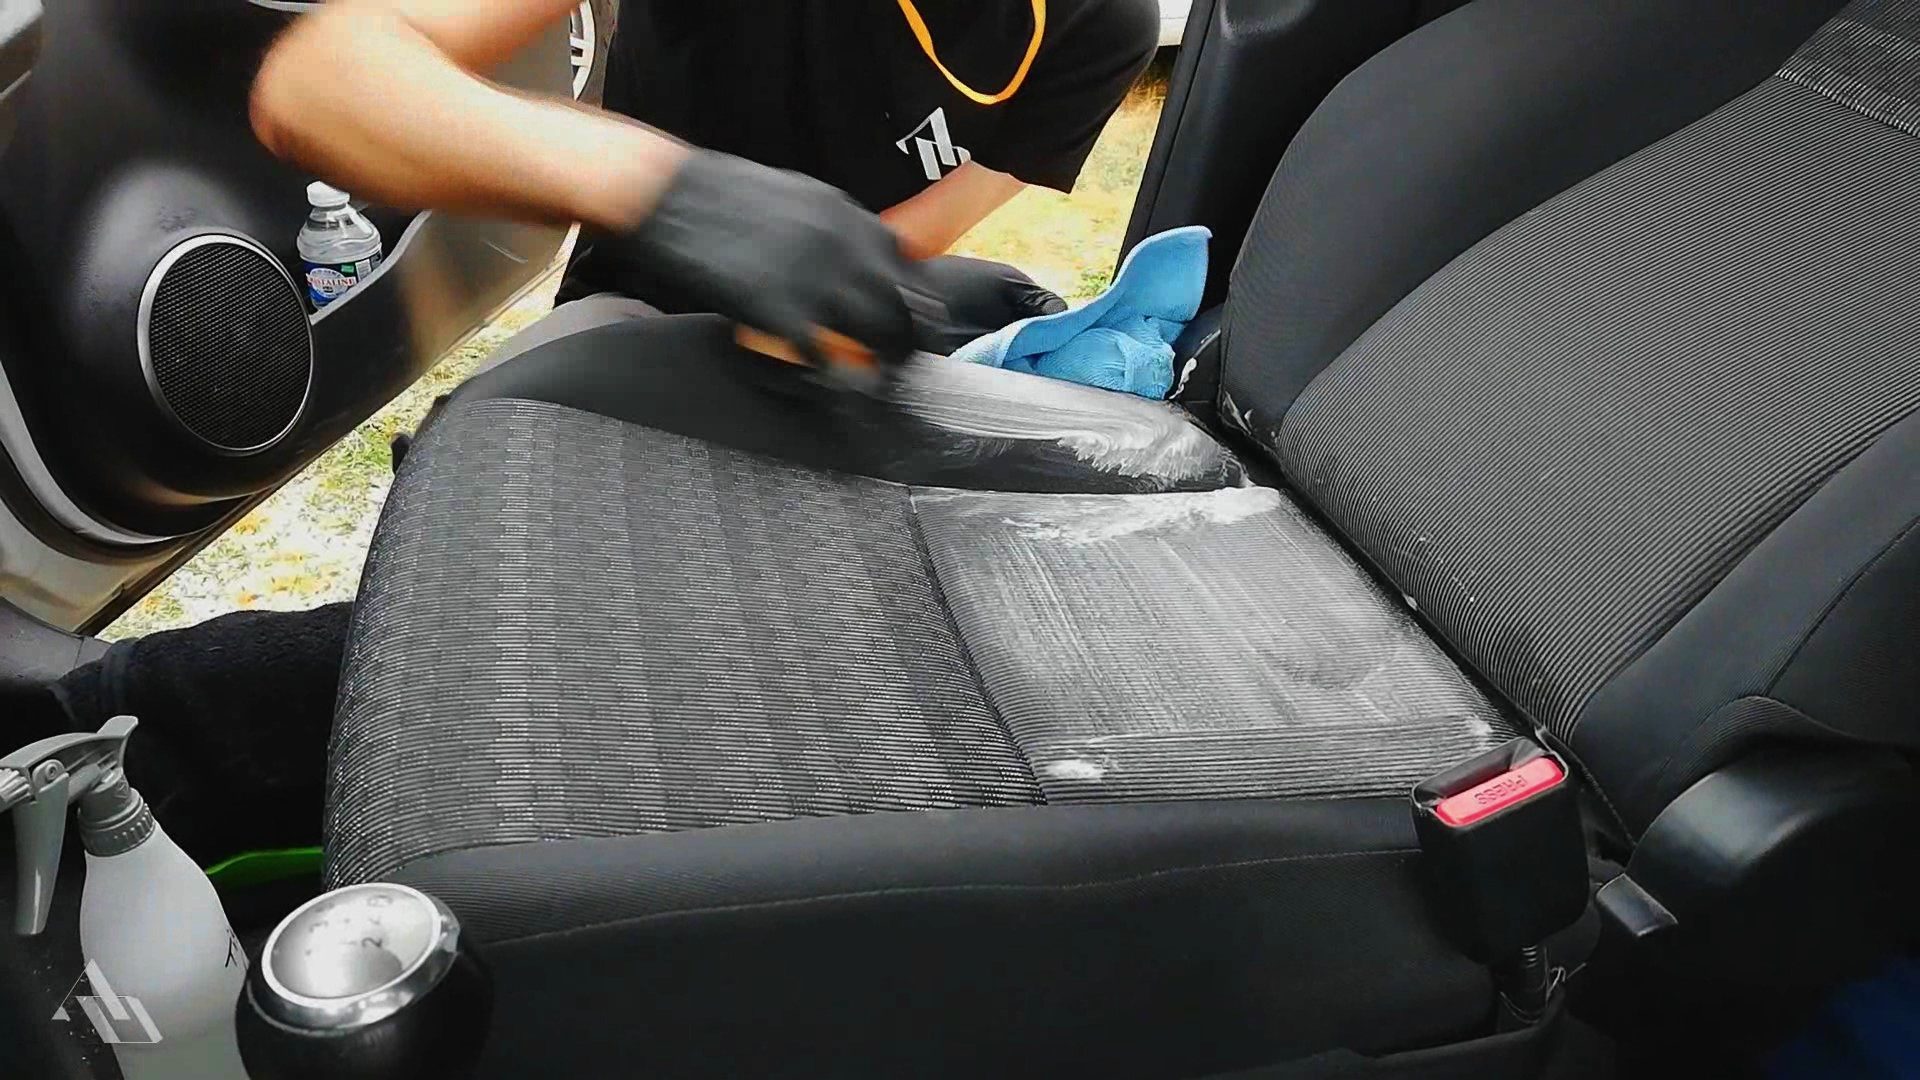 Πώς να καθαρίσετε εύκολα τα καθίσματα του αυτοκινήτου σας.